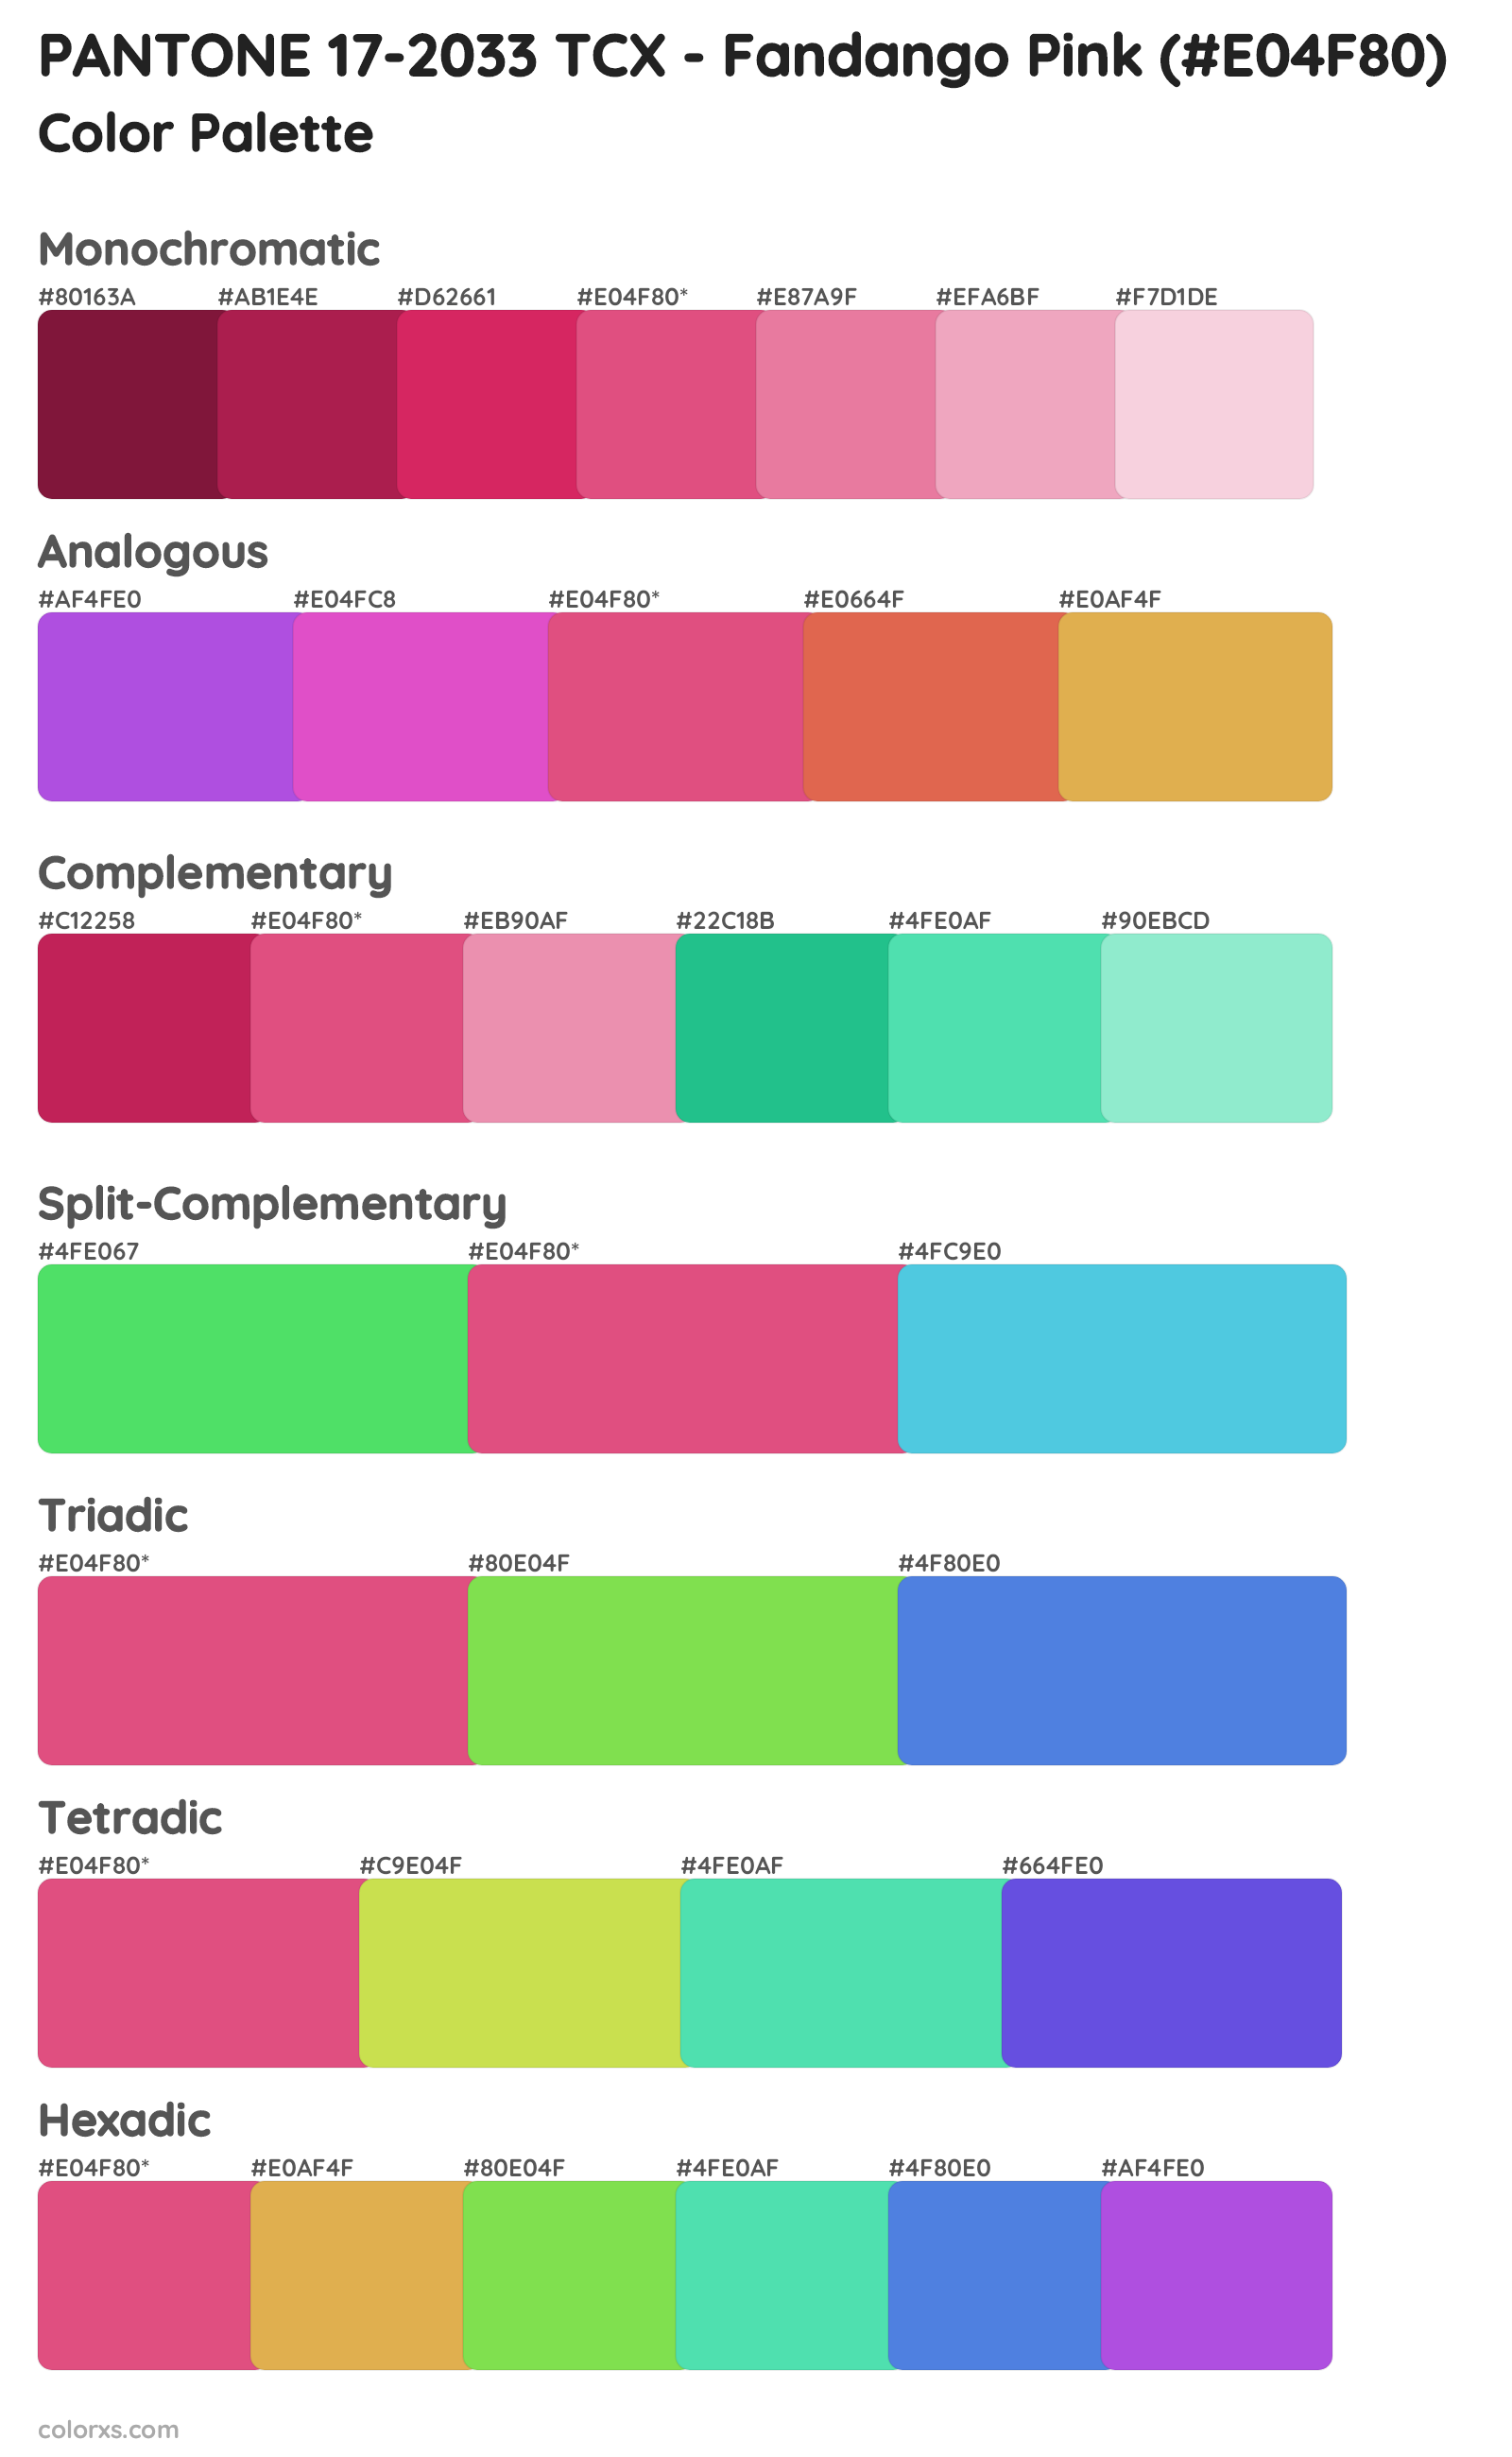 PANTONE 17-2033 TCX - Fandango Pink Color Scheme Palettes